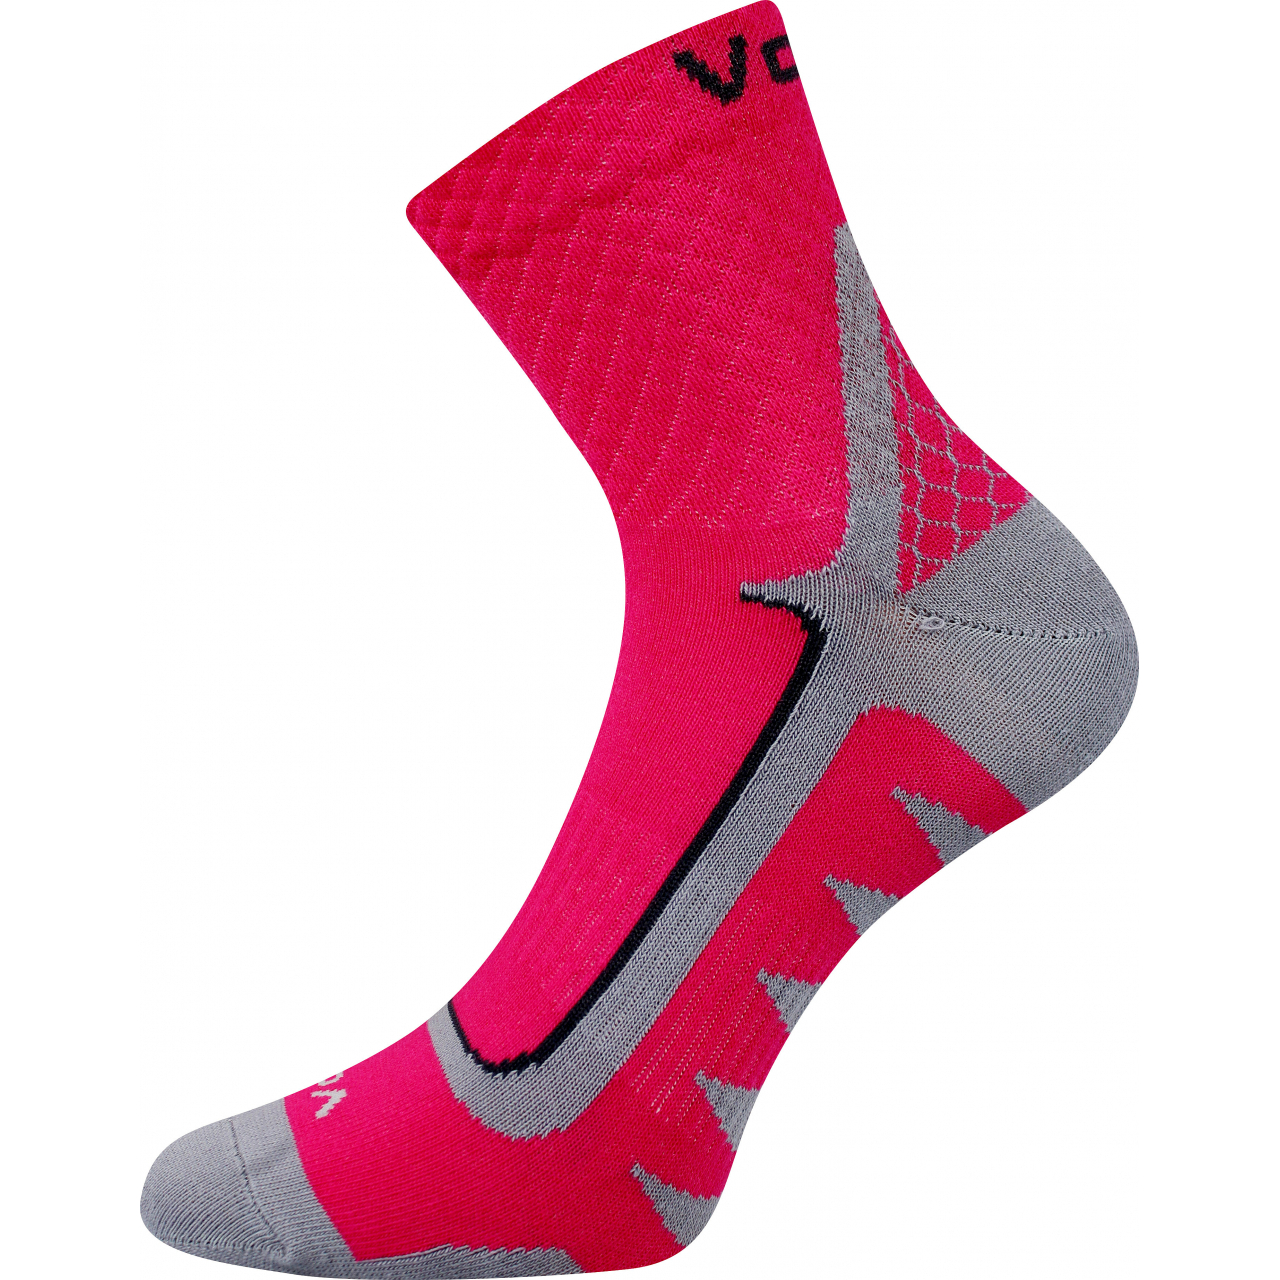 Ponožky sportovní unisex Voxx Kryptox - tmavě růžové, 35-38